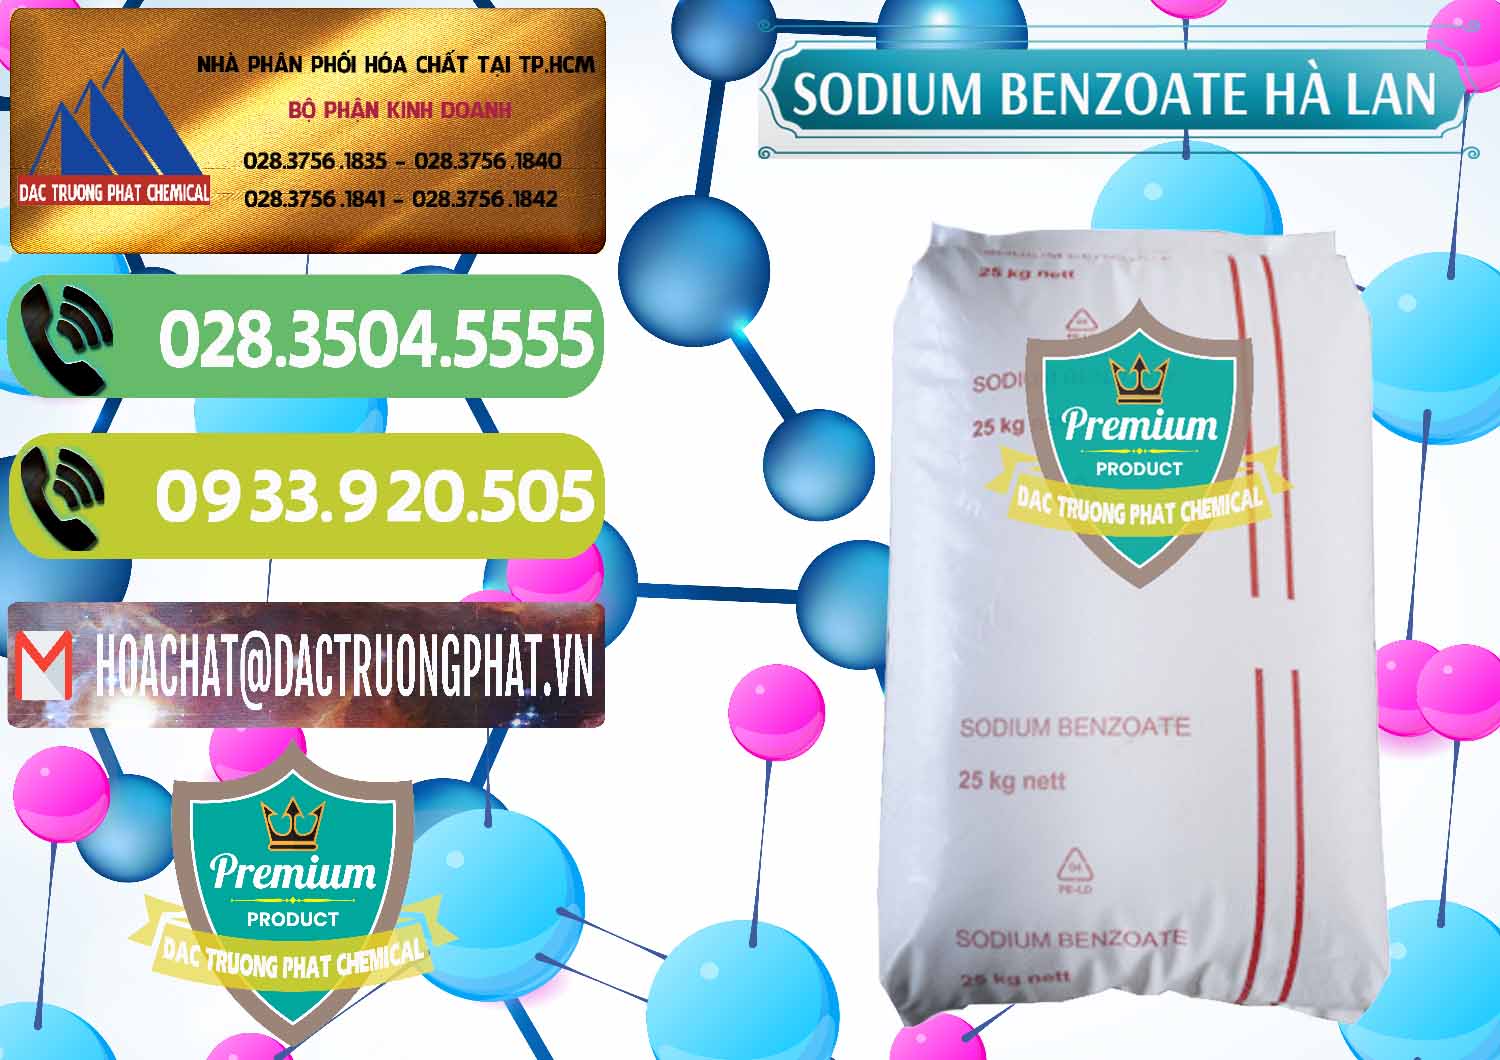 Nơi bán & cung ứng Sodium Benzoate - Mốc Bột Chữ Cam Hà Lan Netherlands - 0360 - Phân phối _ kinh doanh hóa chất tại TP.HCM - hoachatmientay.vn